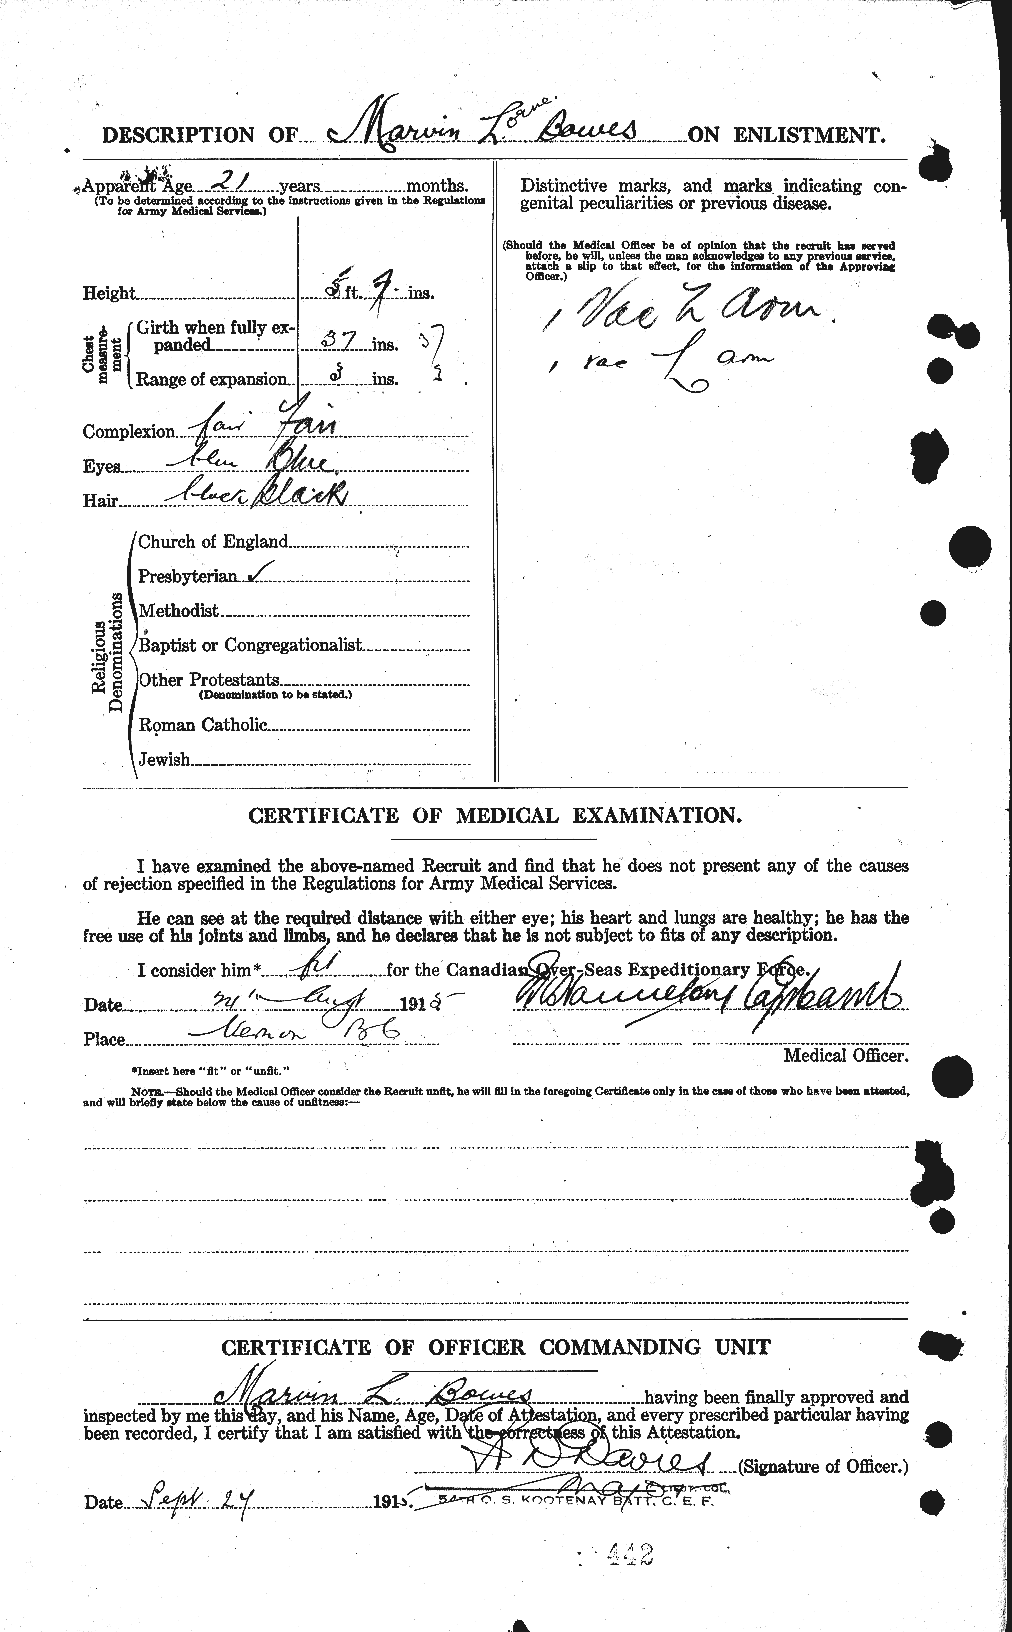 Dossiers du Personnel de la Première Guerre mondiale - CEC 253651b